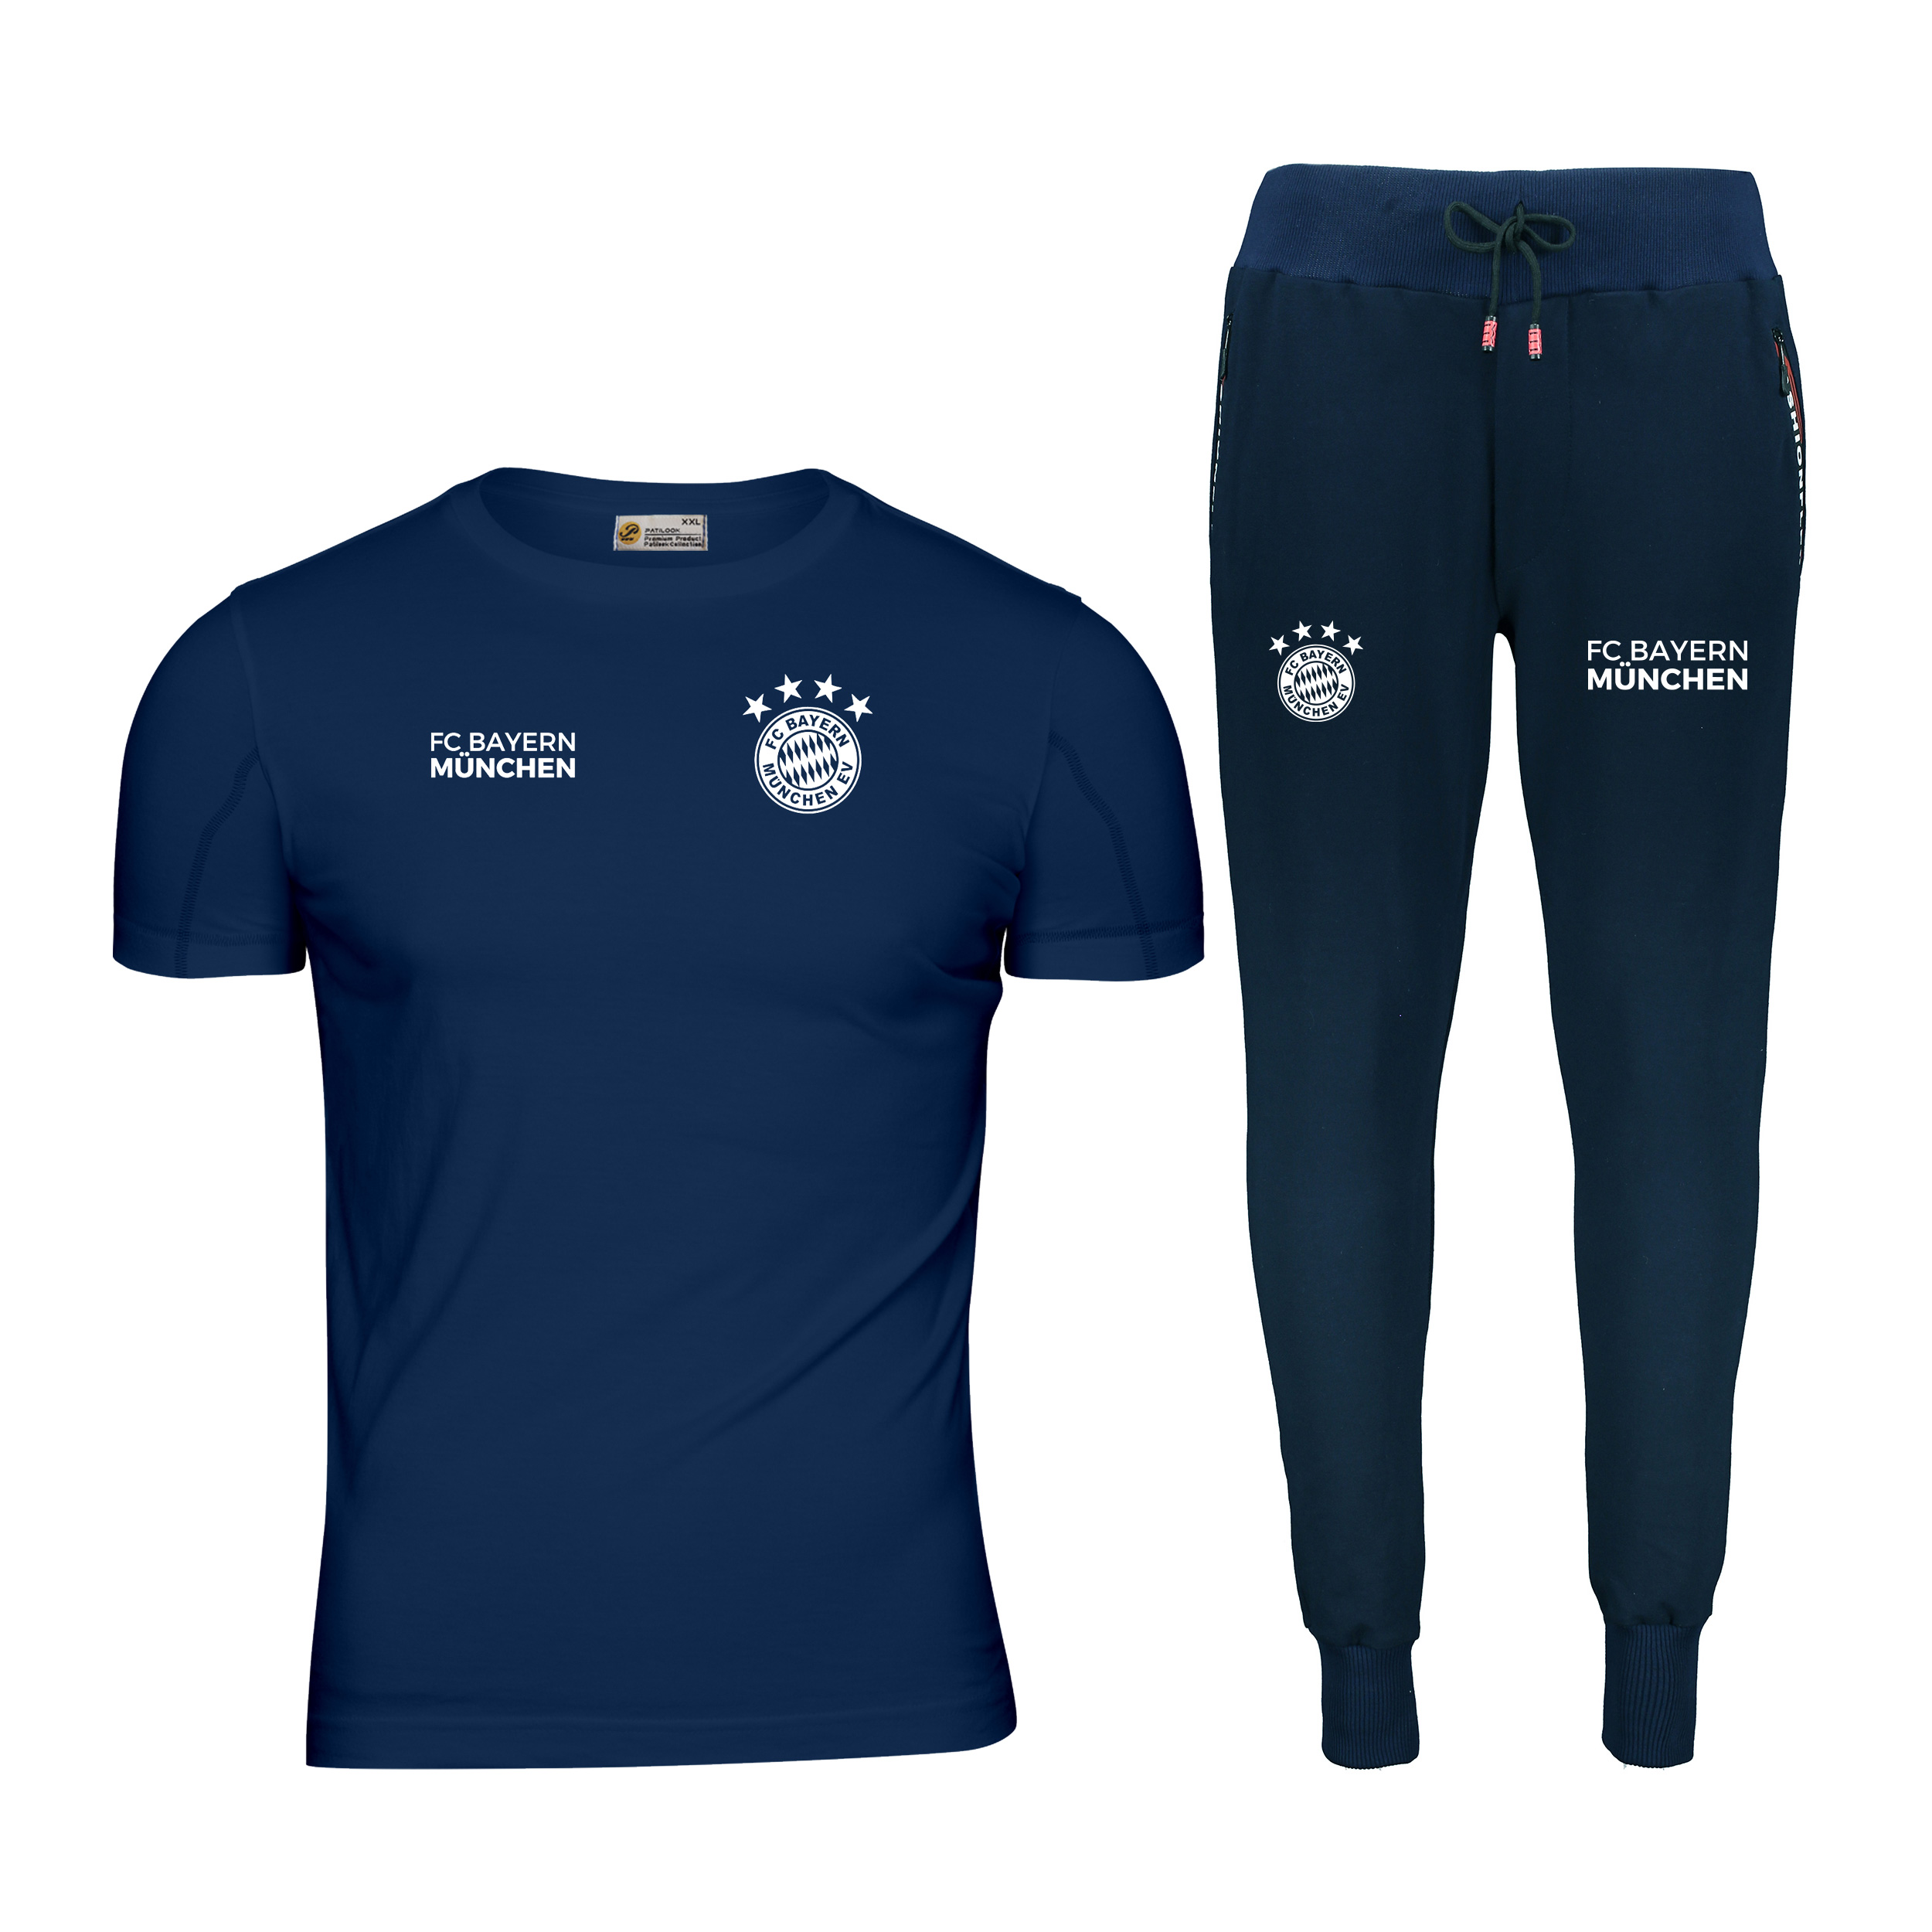 ست تی شرت و شلوار ورزشی مردانه پاتیلوک مدل بایرن مونیخ کد 400105